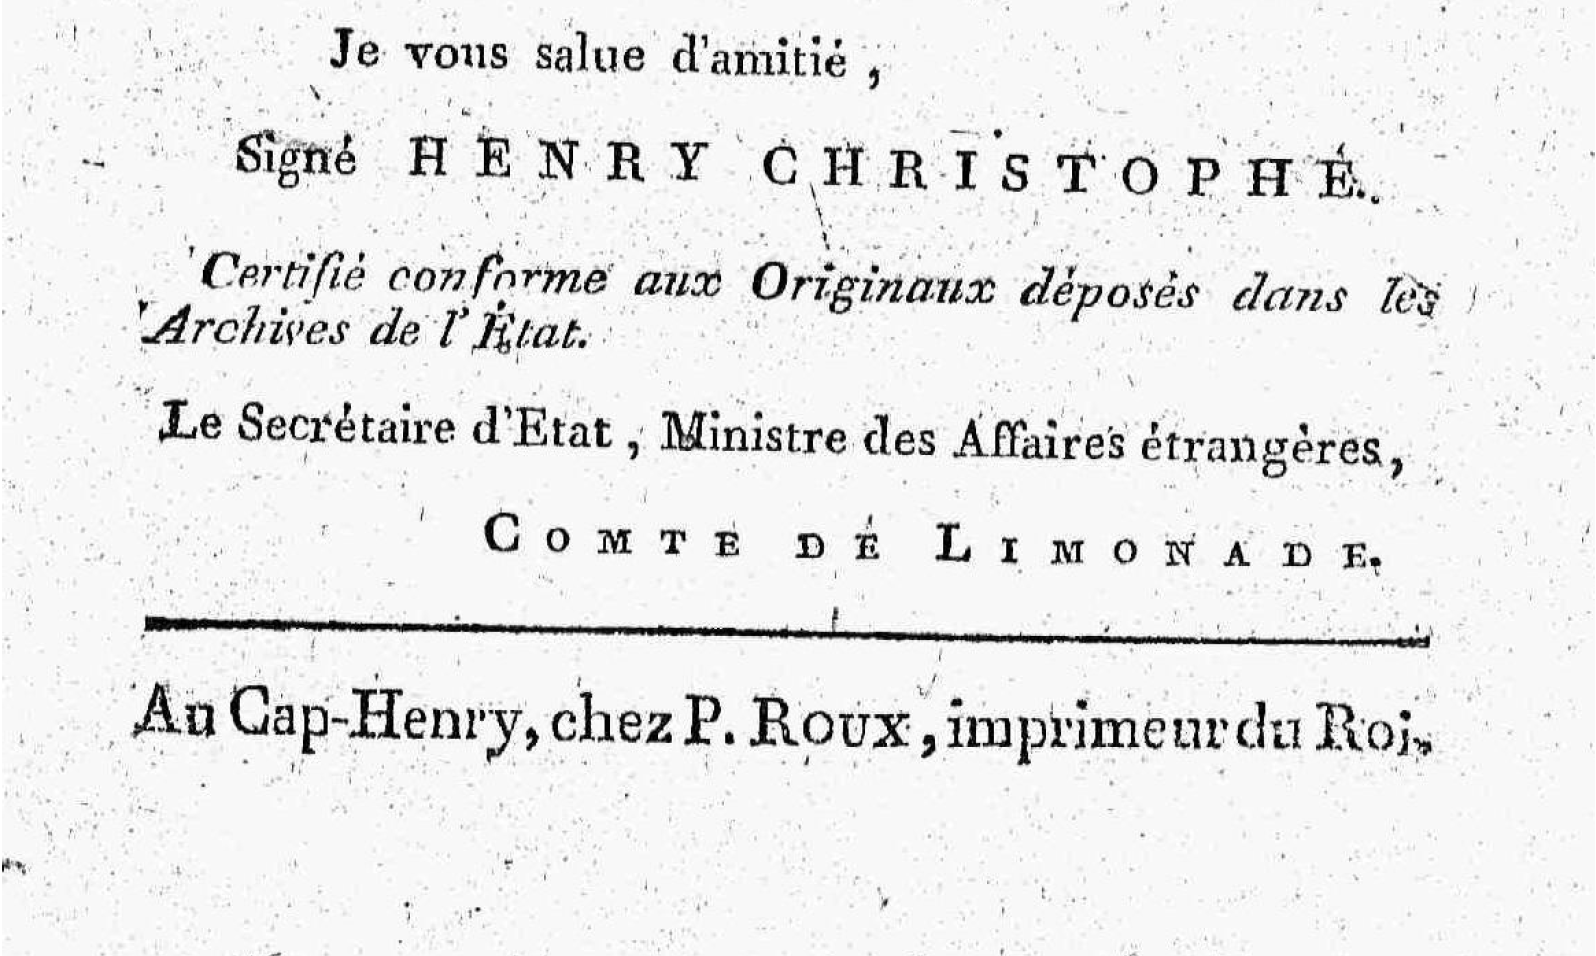 Publication info from the back matter of Christophe's "Manifeste du Roi" (1814)